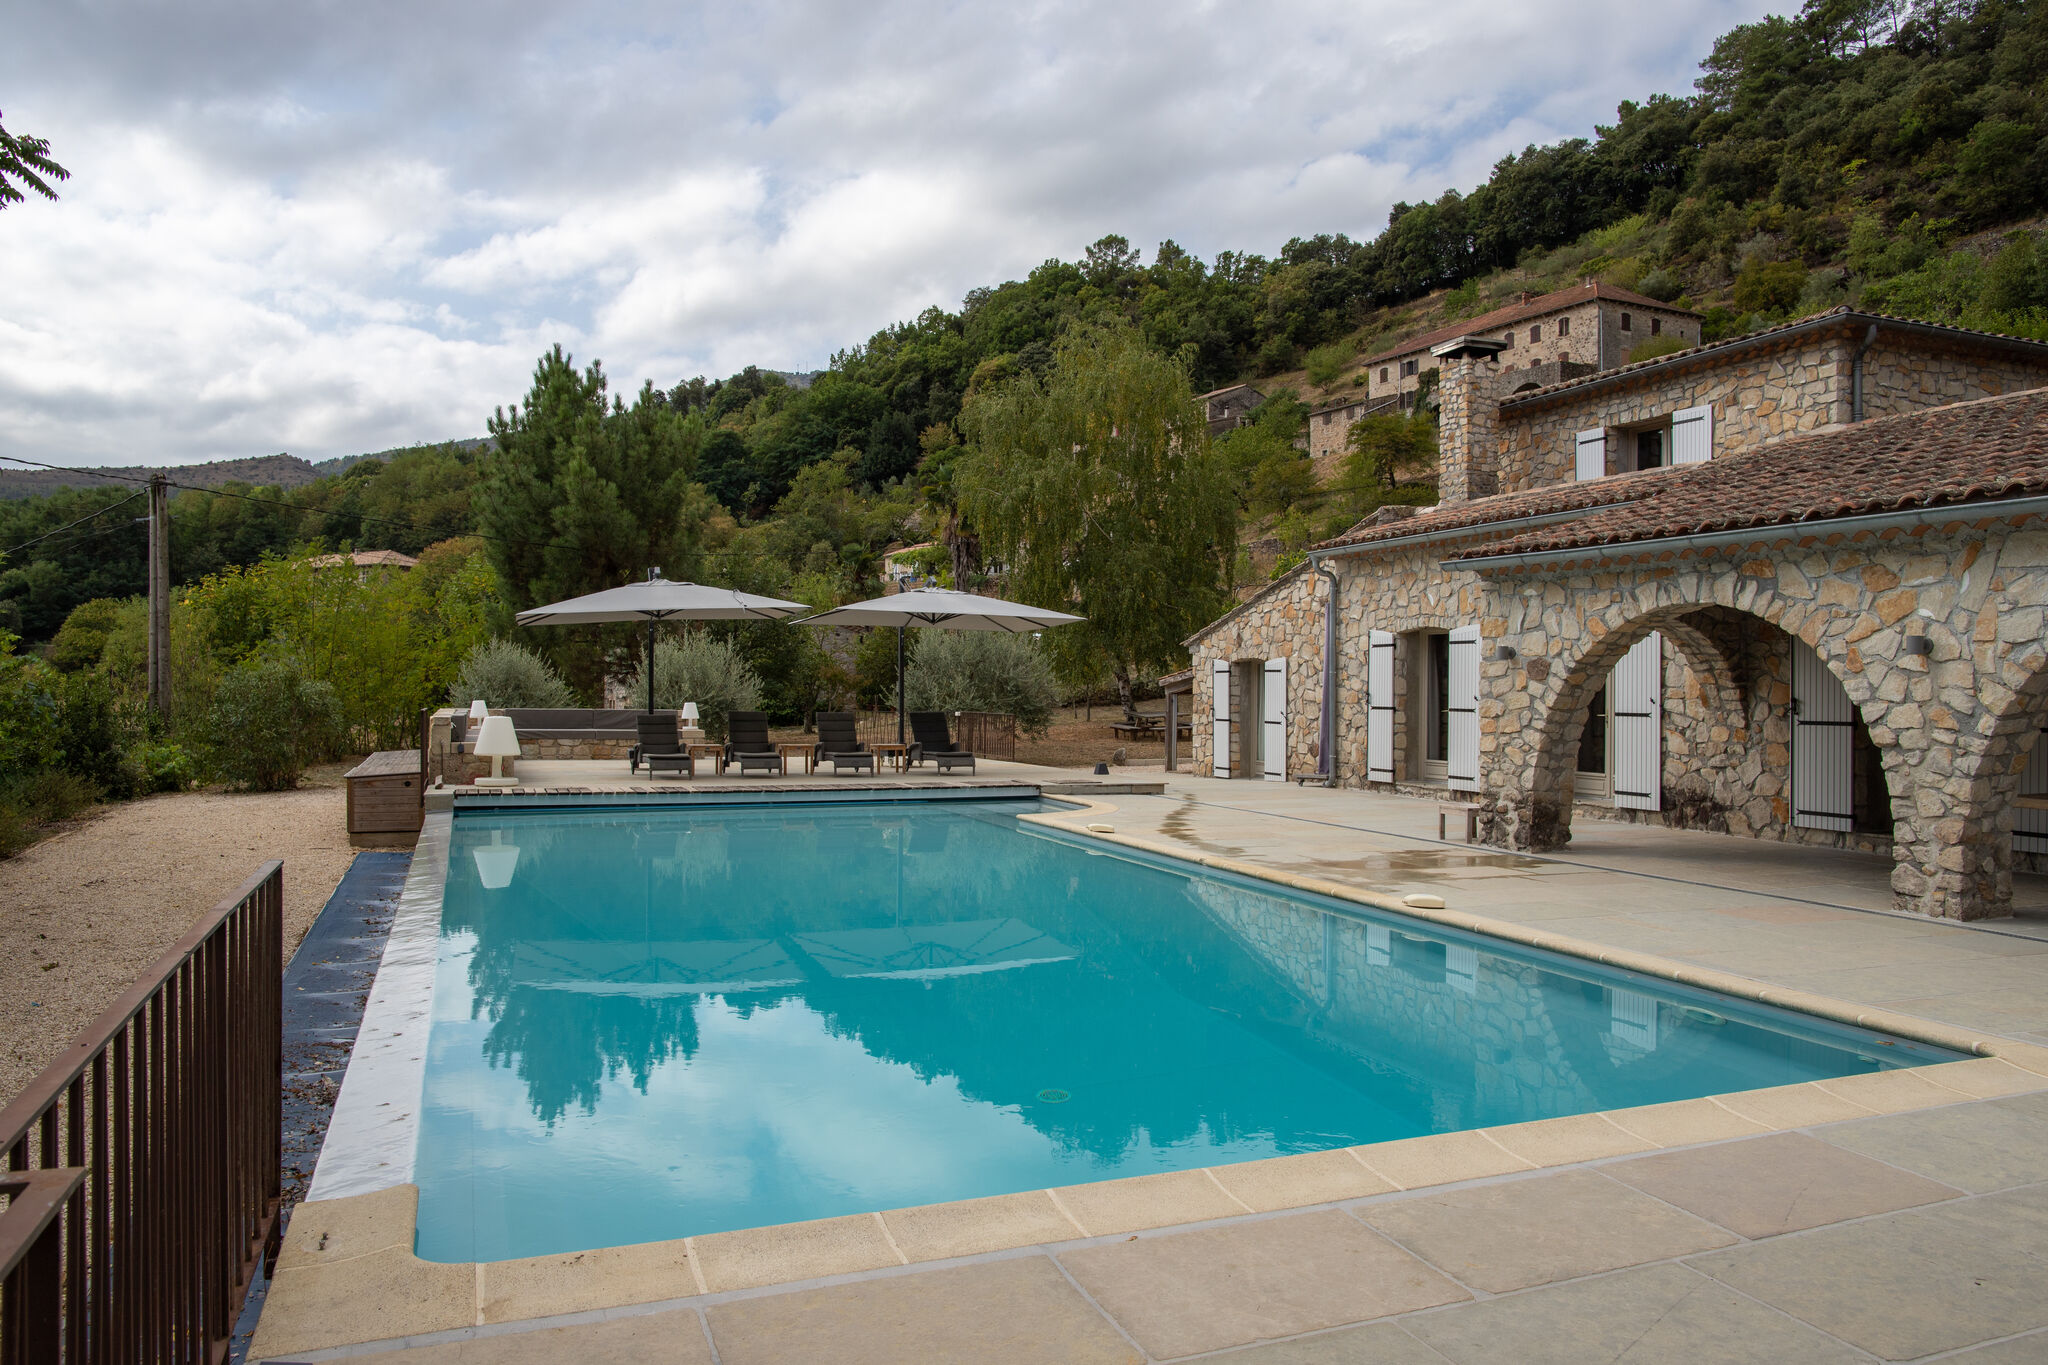 Magnifique villa au sud de l'Ardèche, idéale pour les familles avec enfants